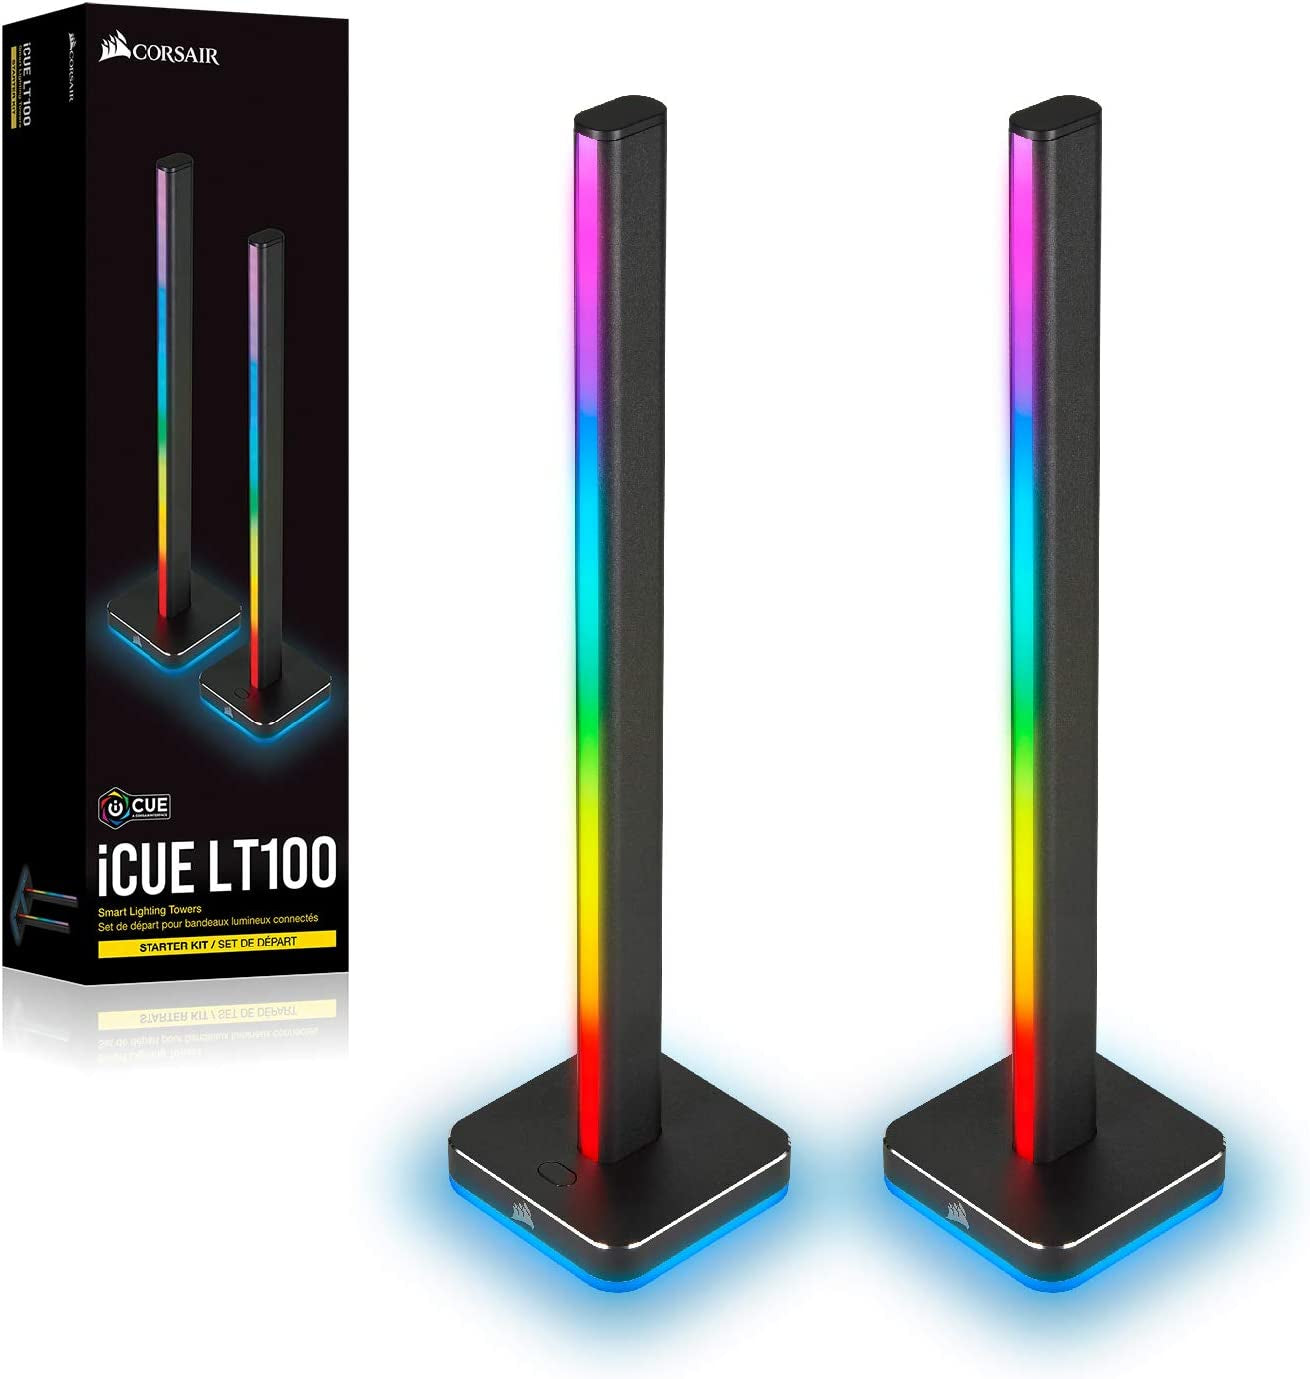 Icue LT100 Smart Lighting Tower Starter Kit